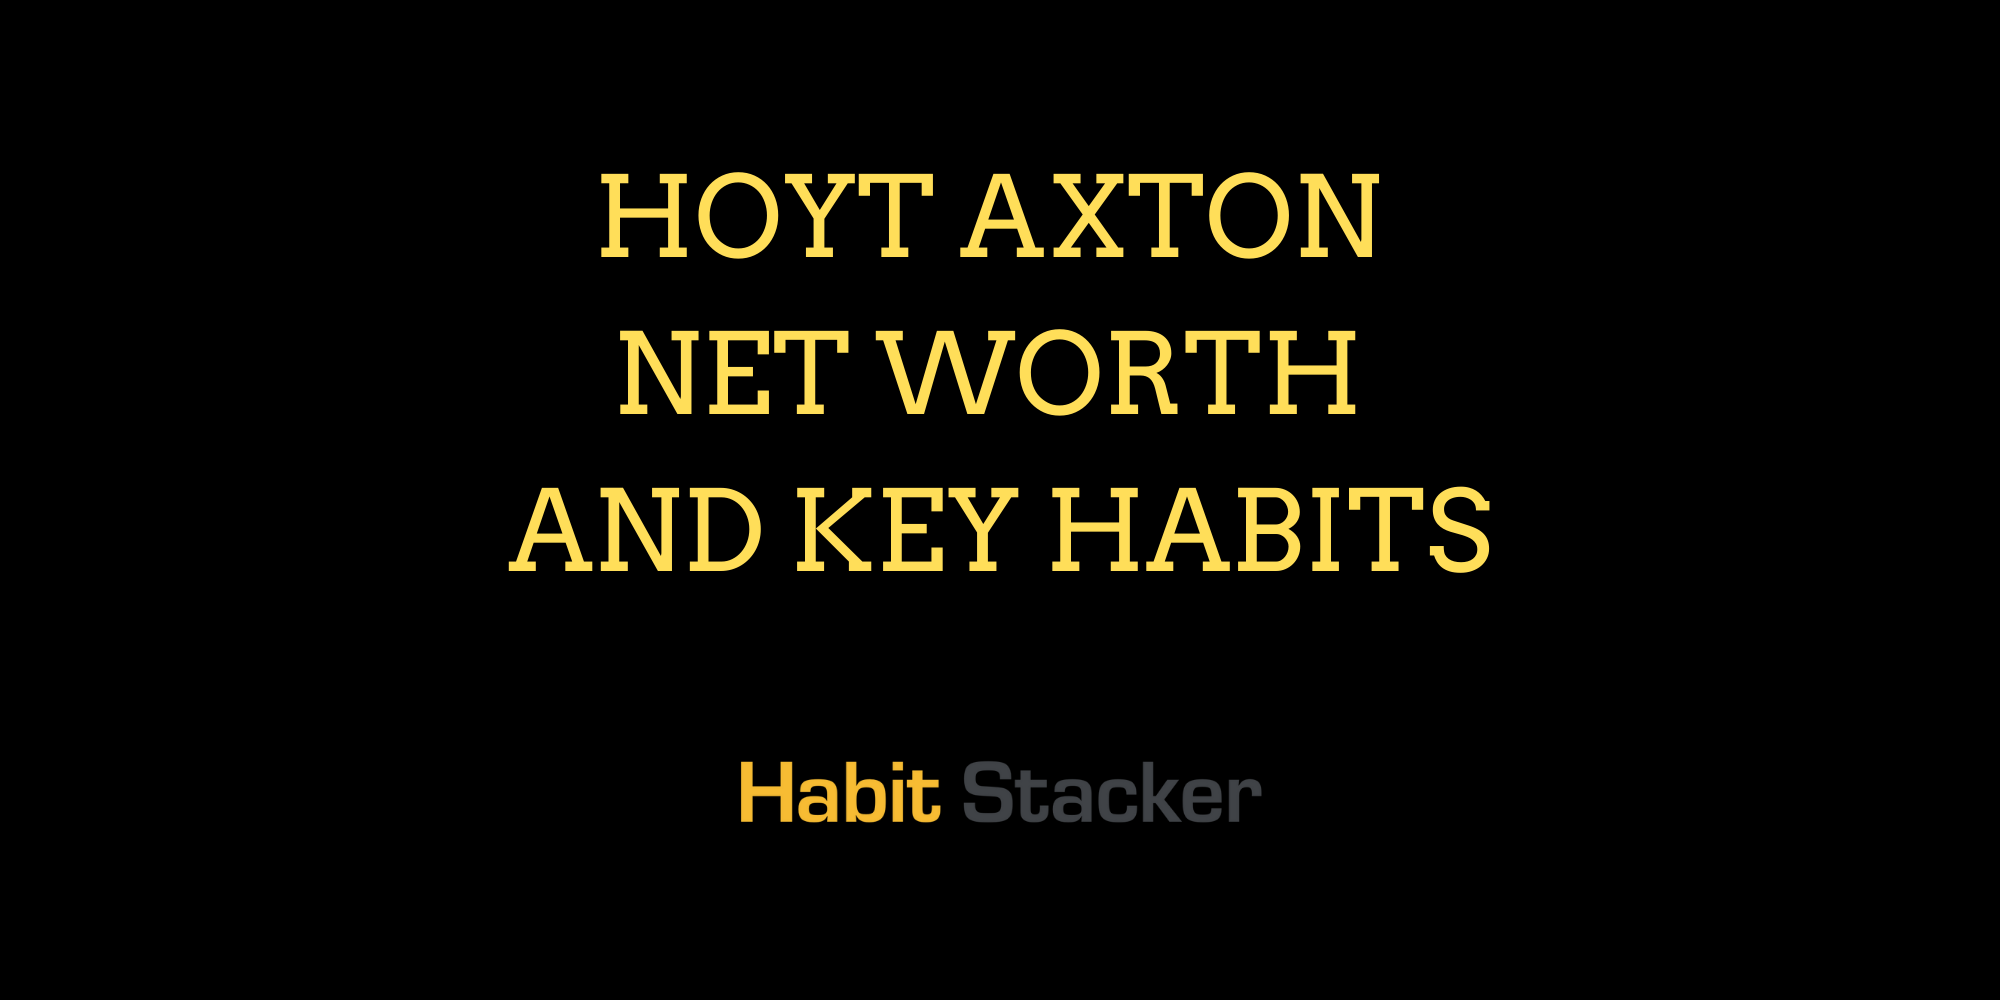 Hoyt Axton Net Worth and Key Habits